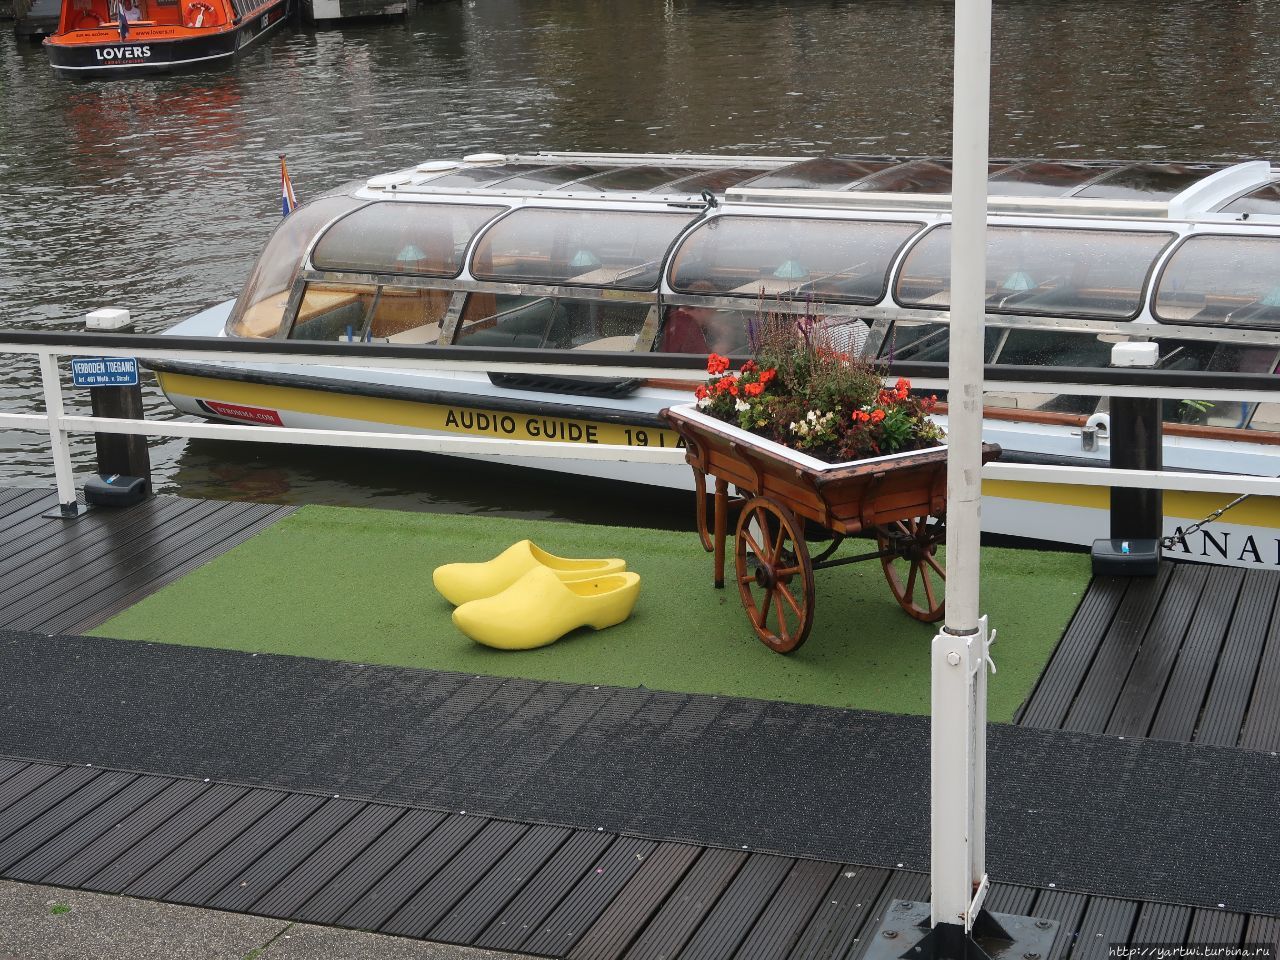 После самостоятельной прогулки с покупкой сувениров, обедом, дождем находим пристань. Нас ждет прогулка по каналам Амстердама. Амстердам, Нидерланды